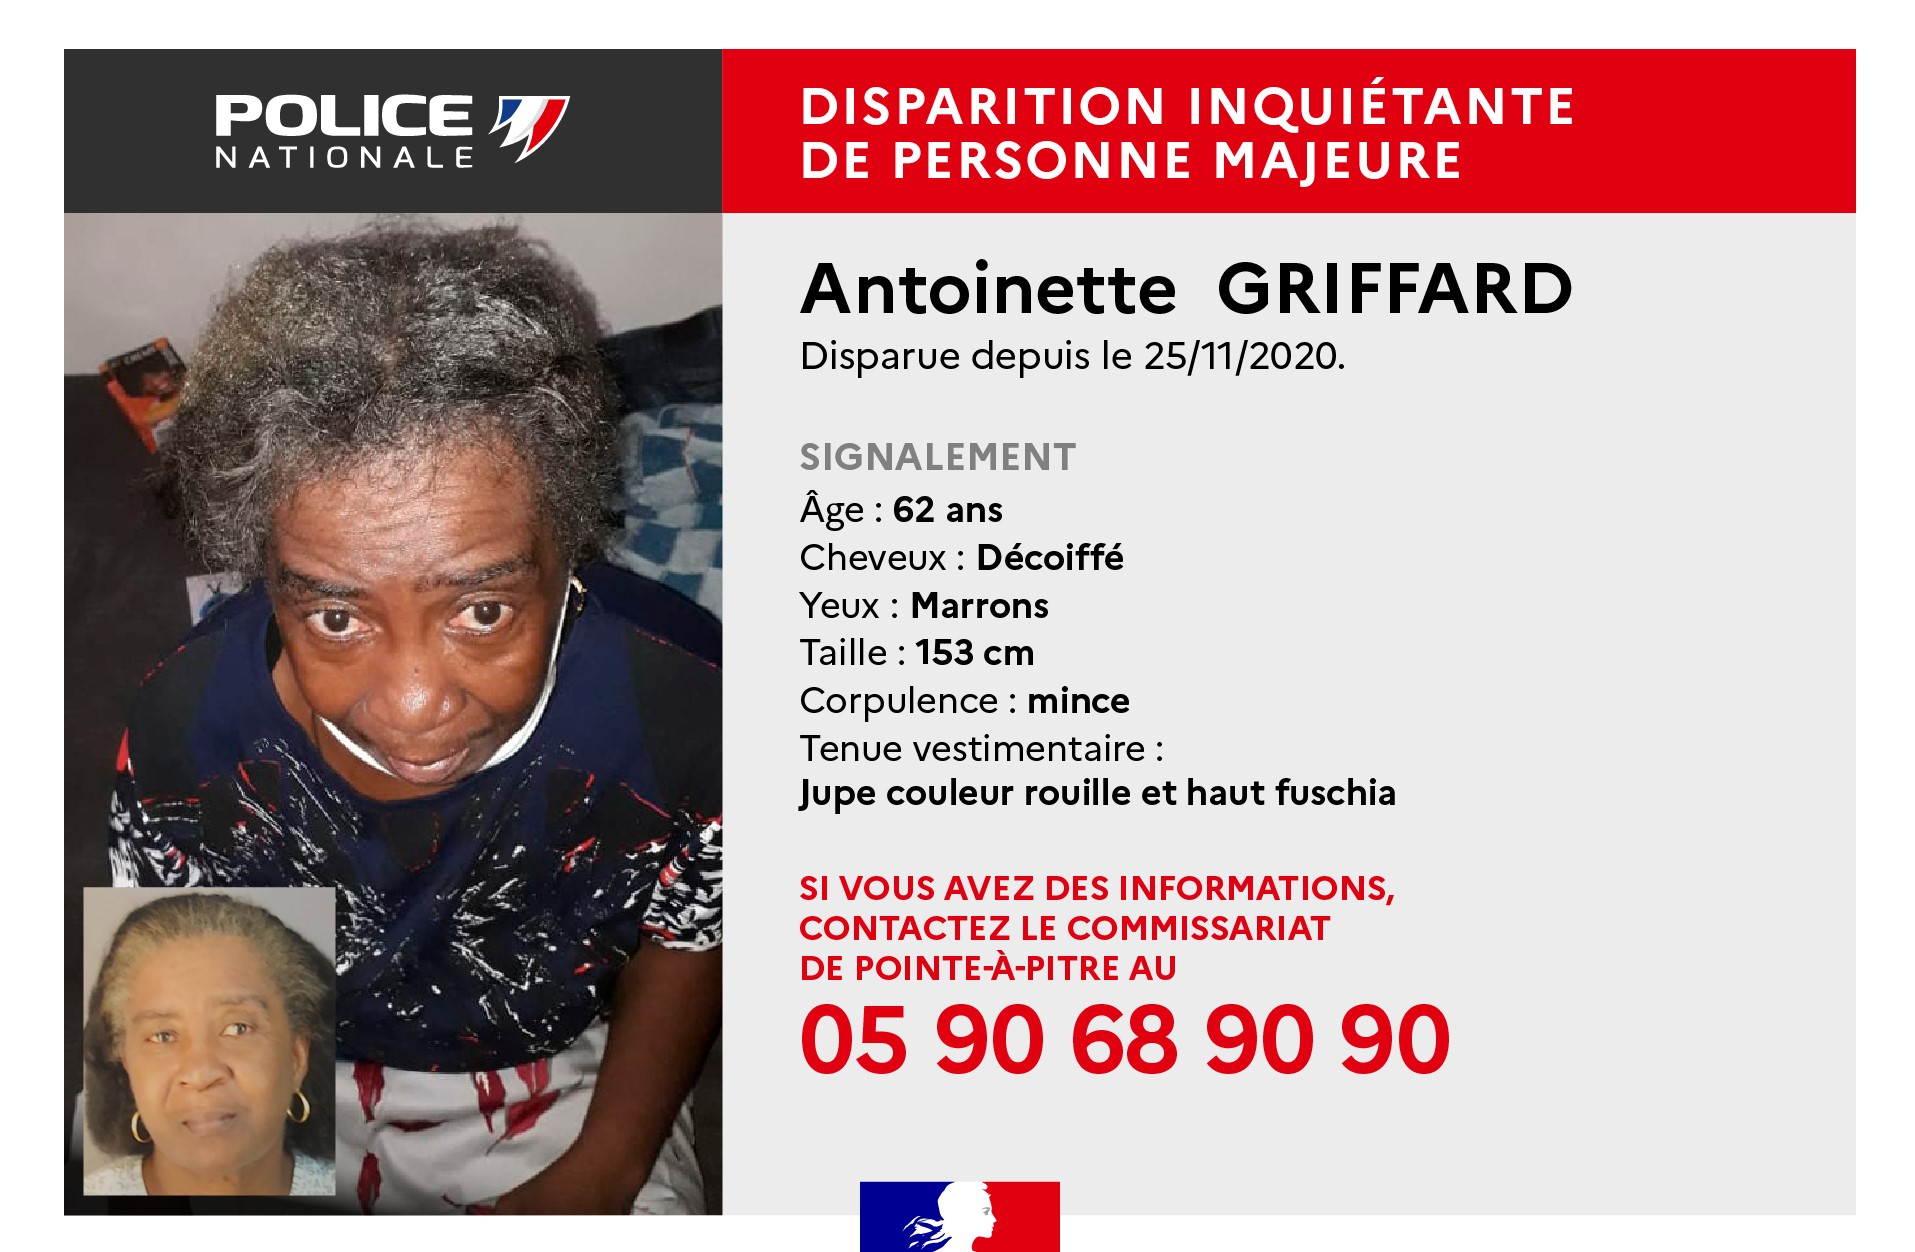     Appel à témoins : Antoinette Griffard demeure introuvable 

